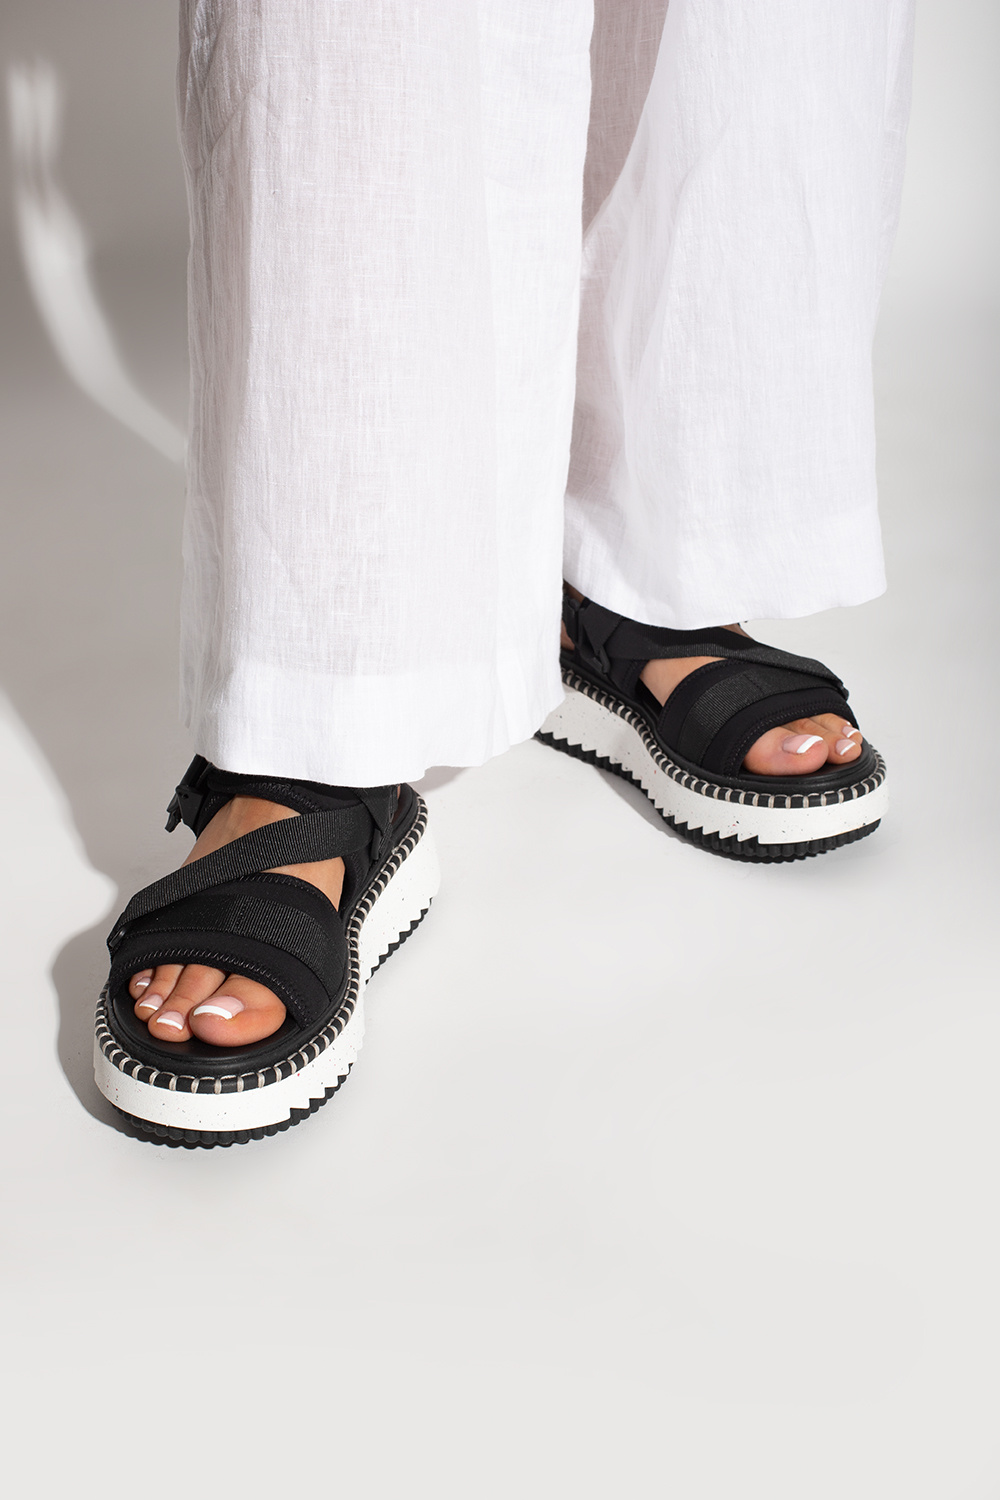 Chloé ‘Lilli’ platform sandals | Women's Shoes | Vitkac